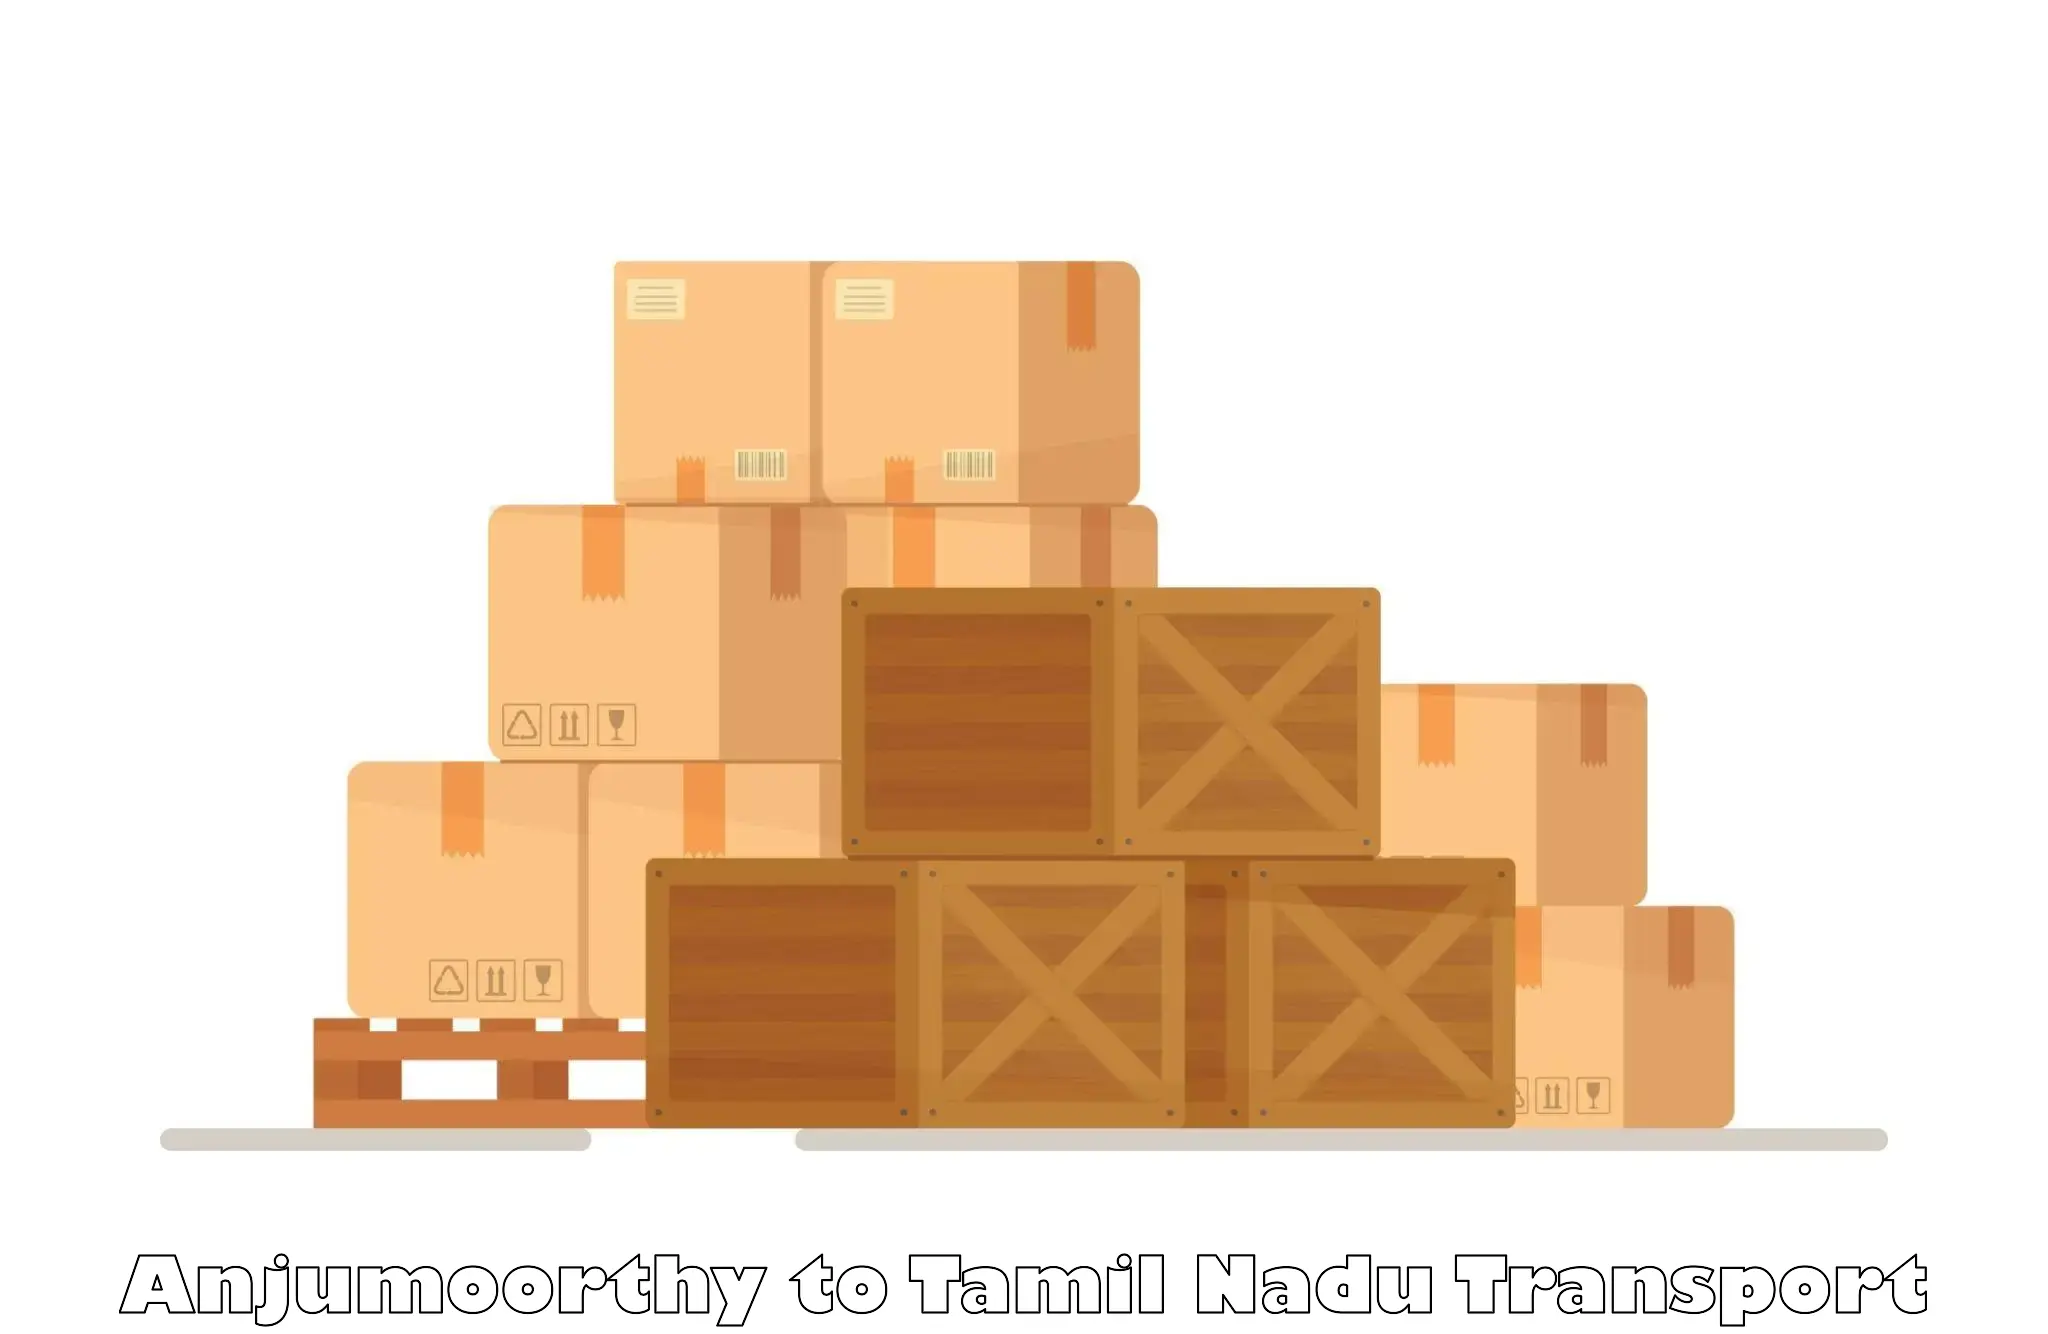 Pick up transport service Anjumoorthy to Tamil Nadu